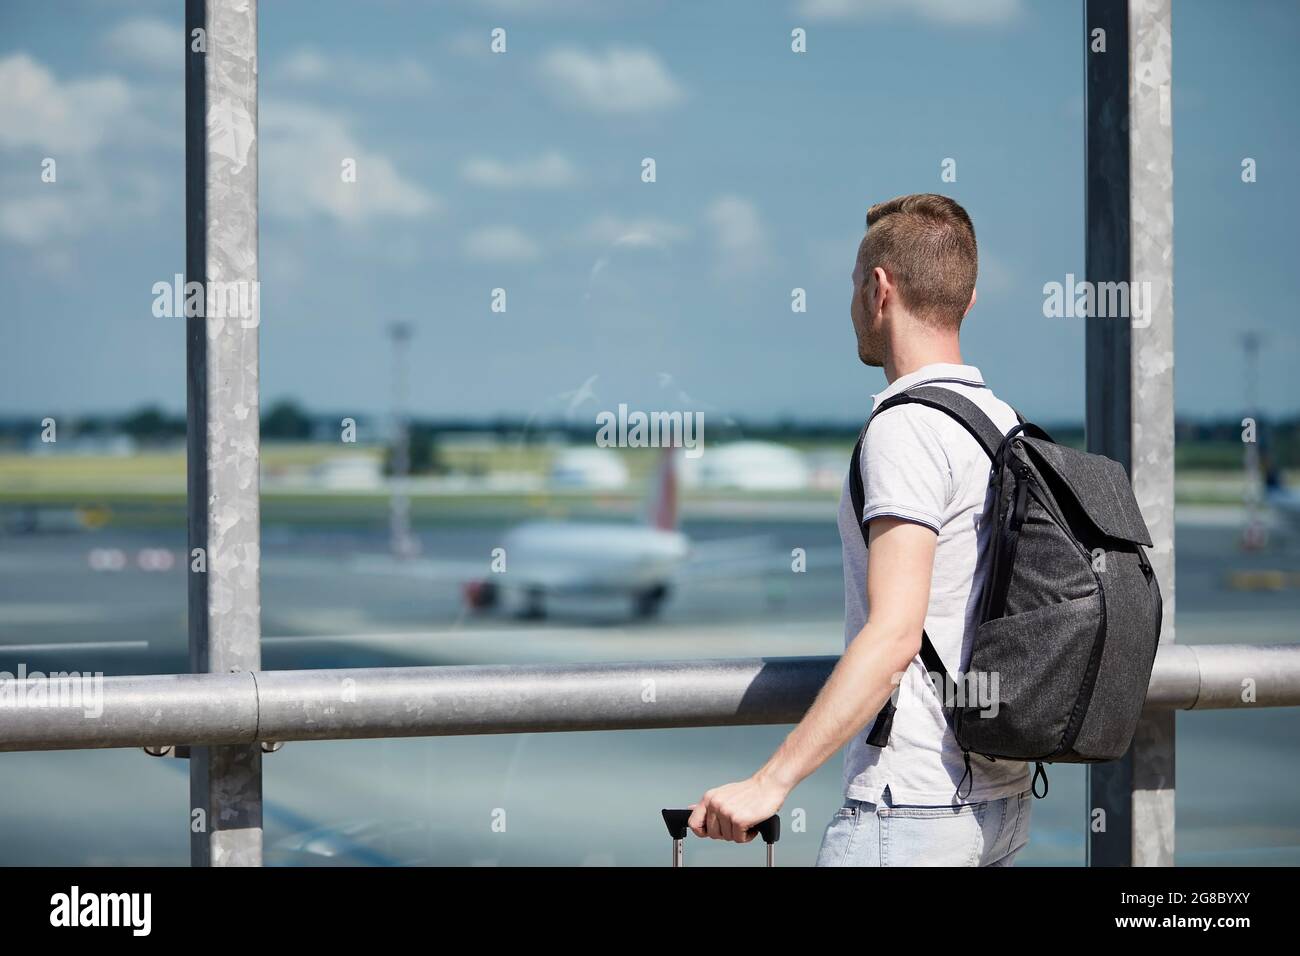 Reisende beobachten Flugzeuge am Flughafen. Rückansicht des Passagiers mit Rucksack, der durch das Fenster des Terminalgebäudes blickt. Stockfoto